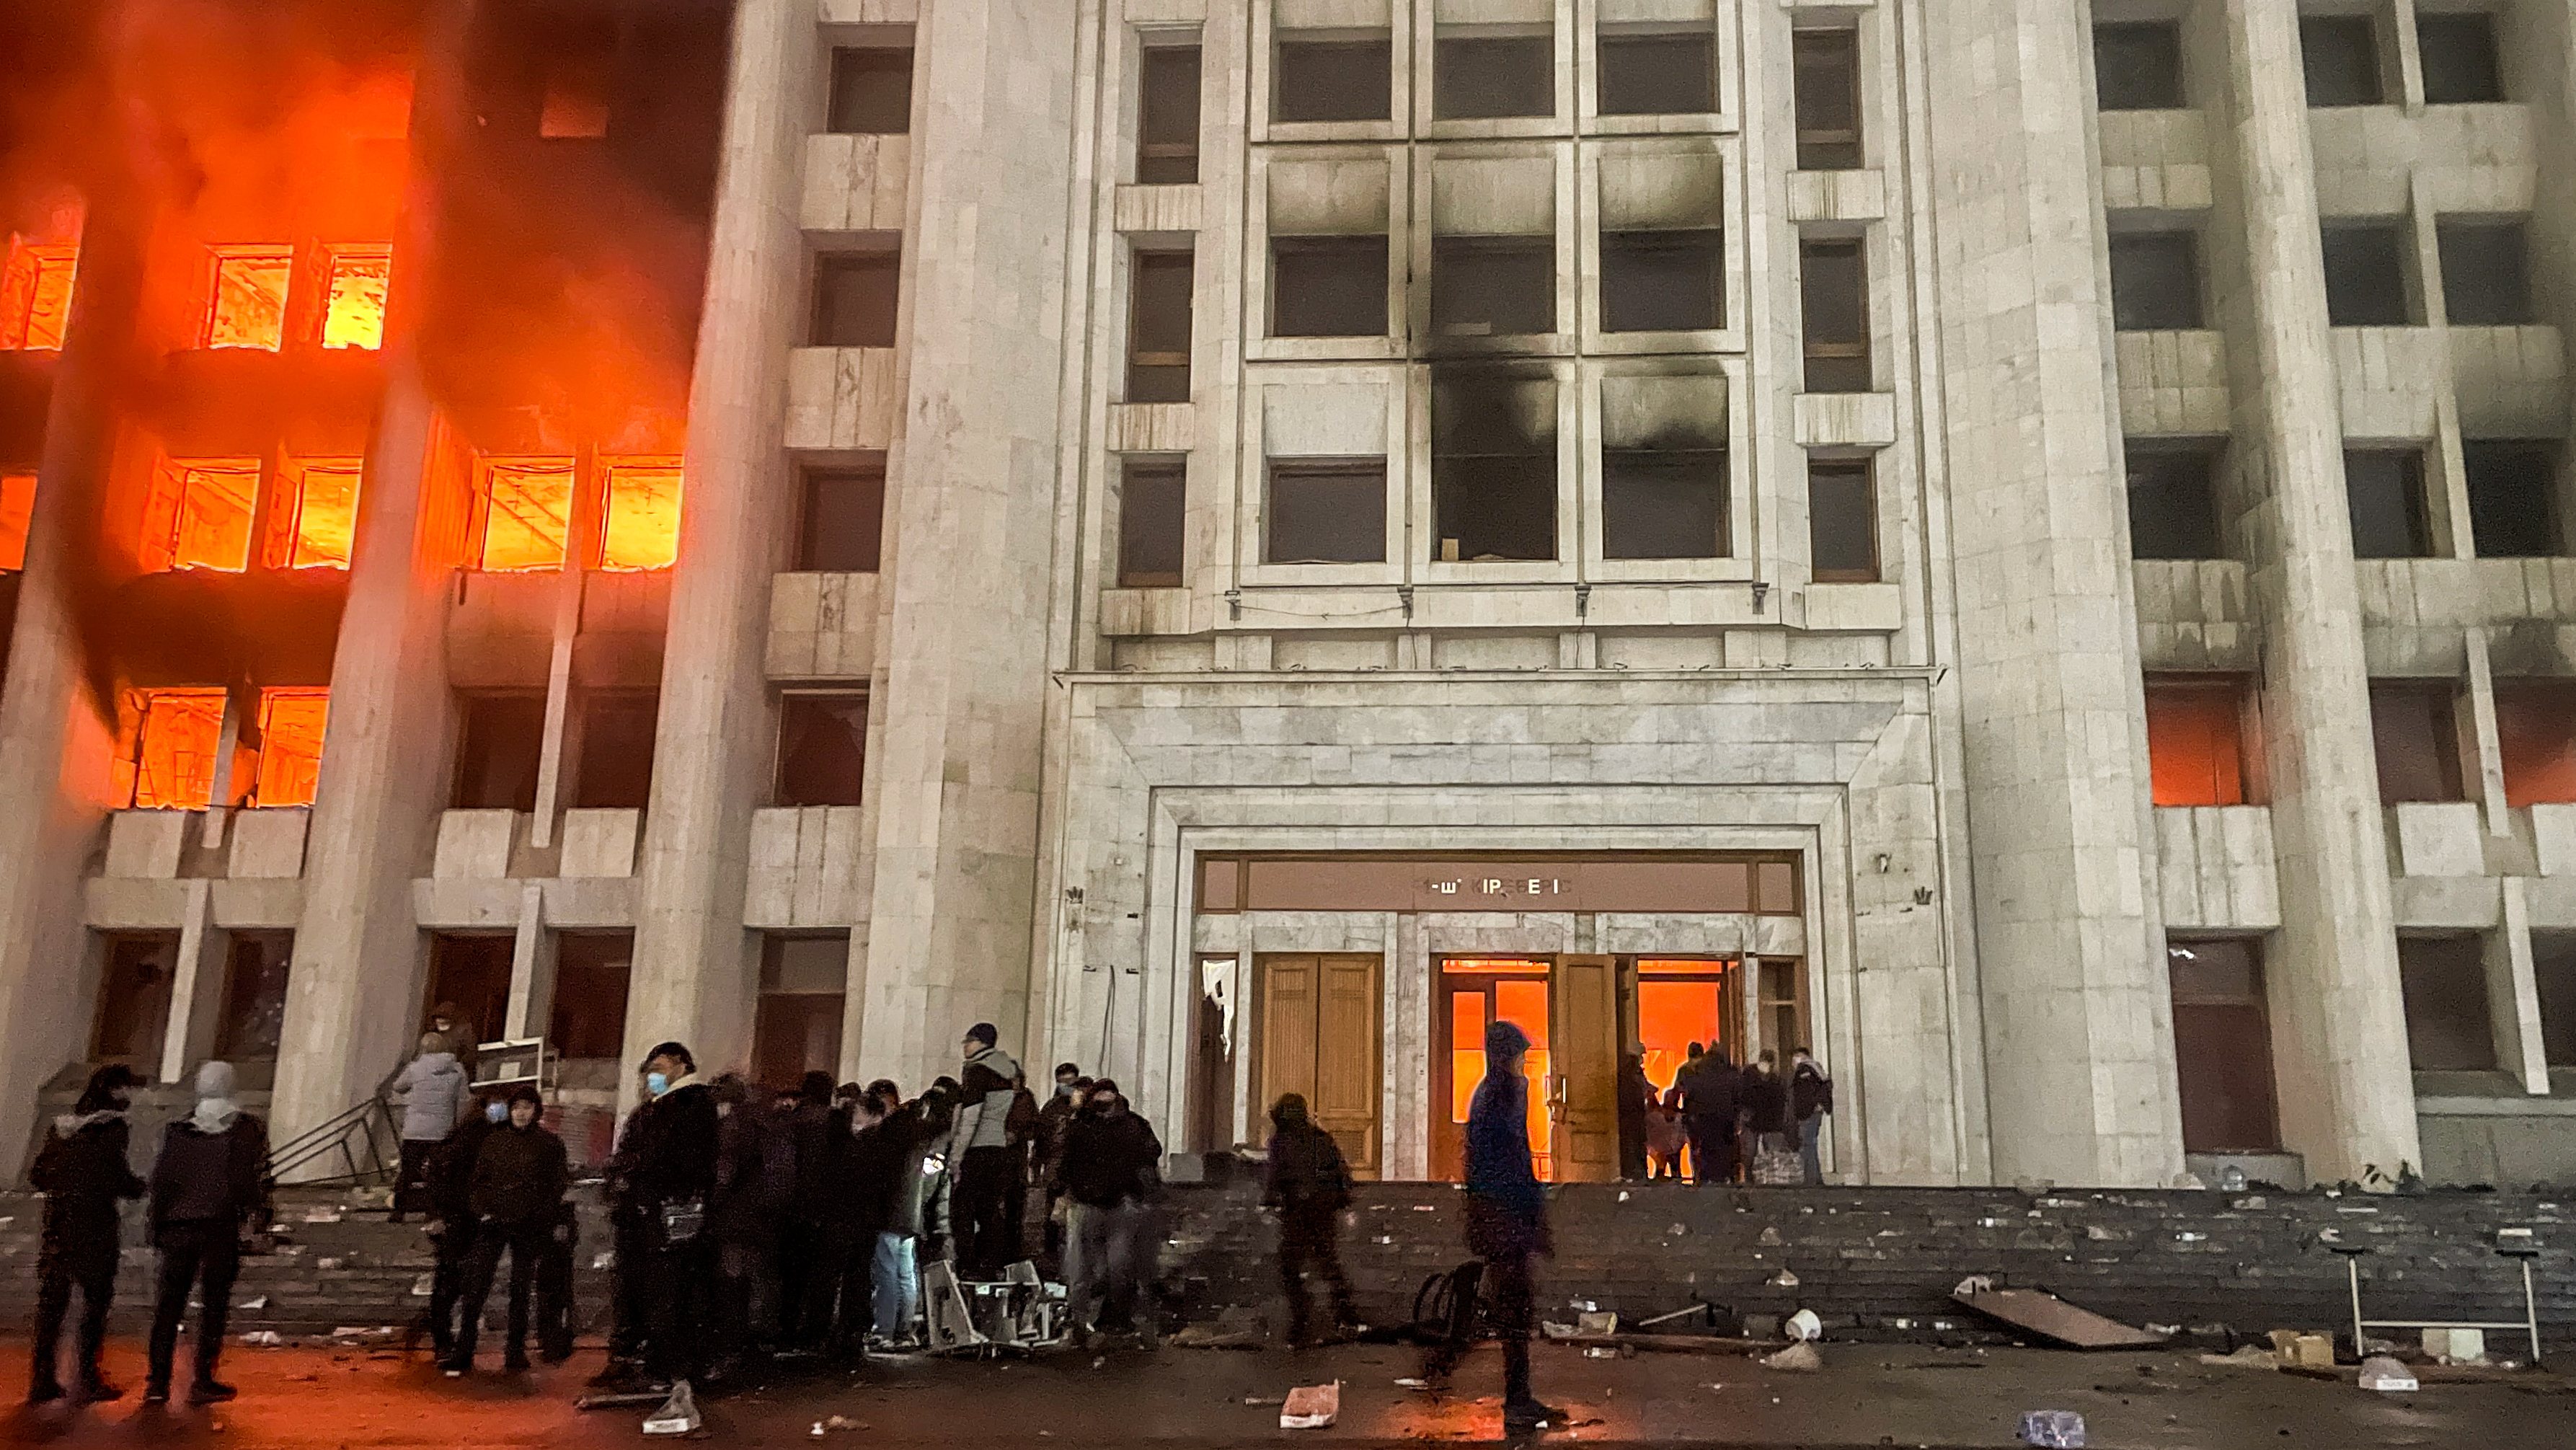 Mayors office on fire in Almaty, Kazakhstan